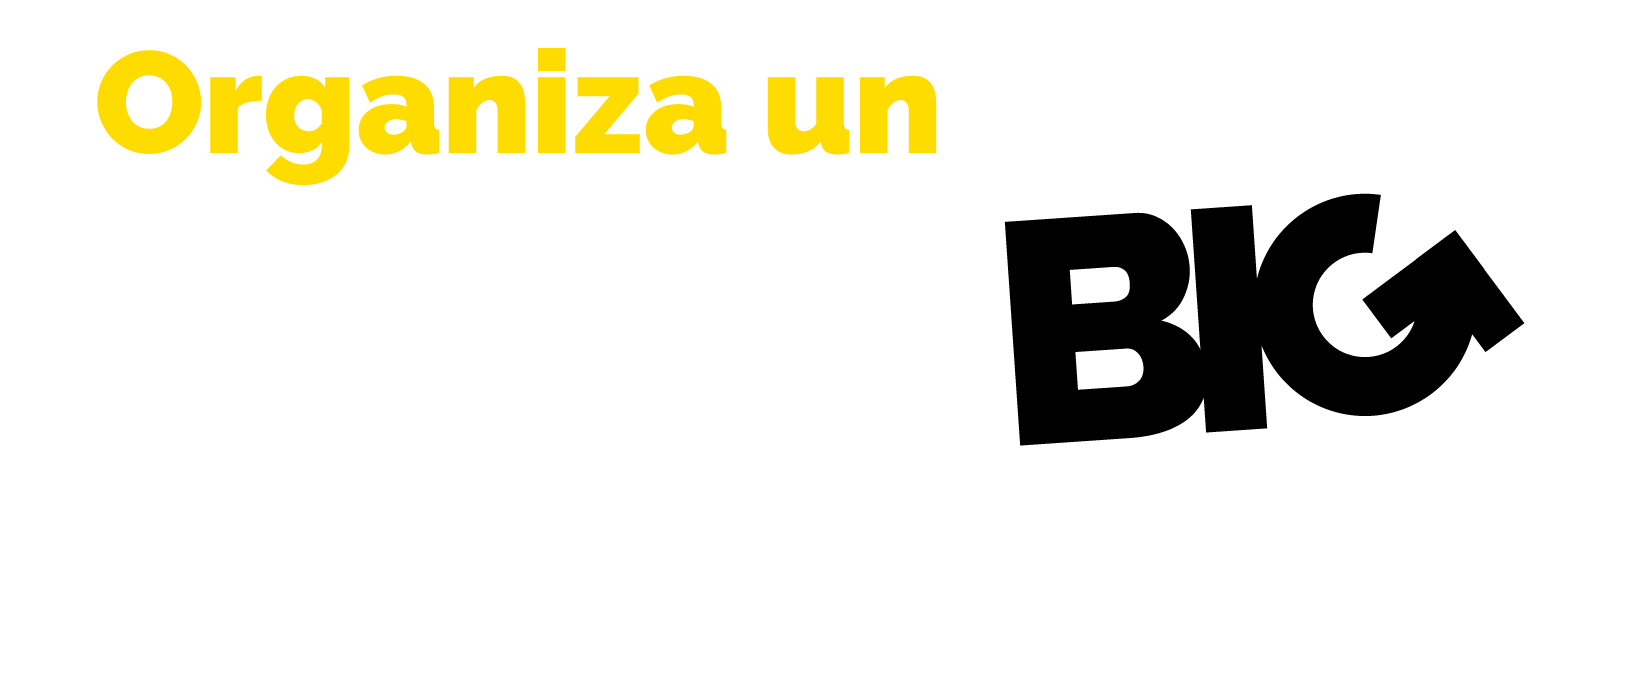 Dreambig by pau